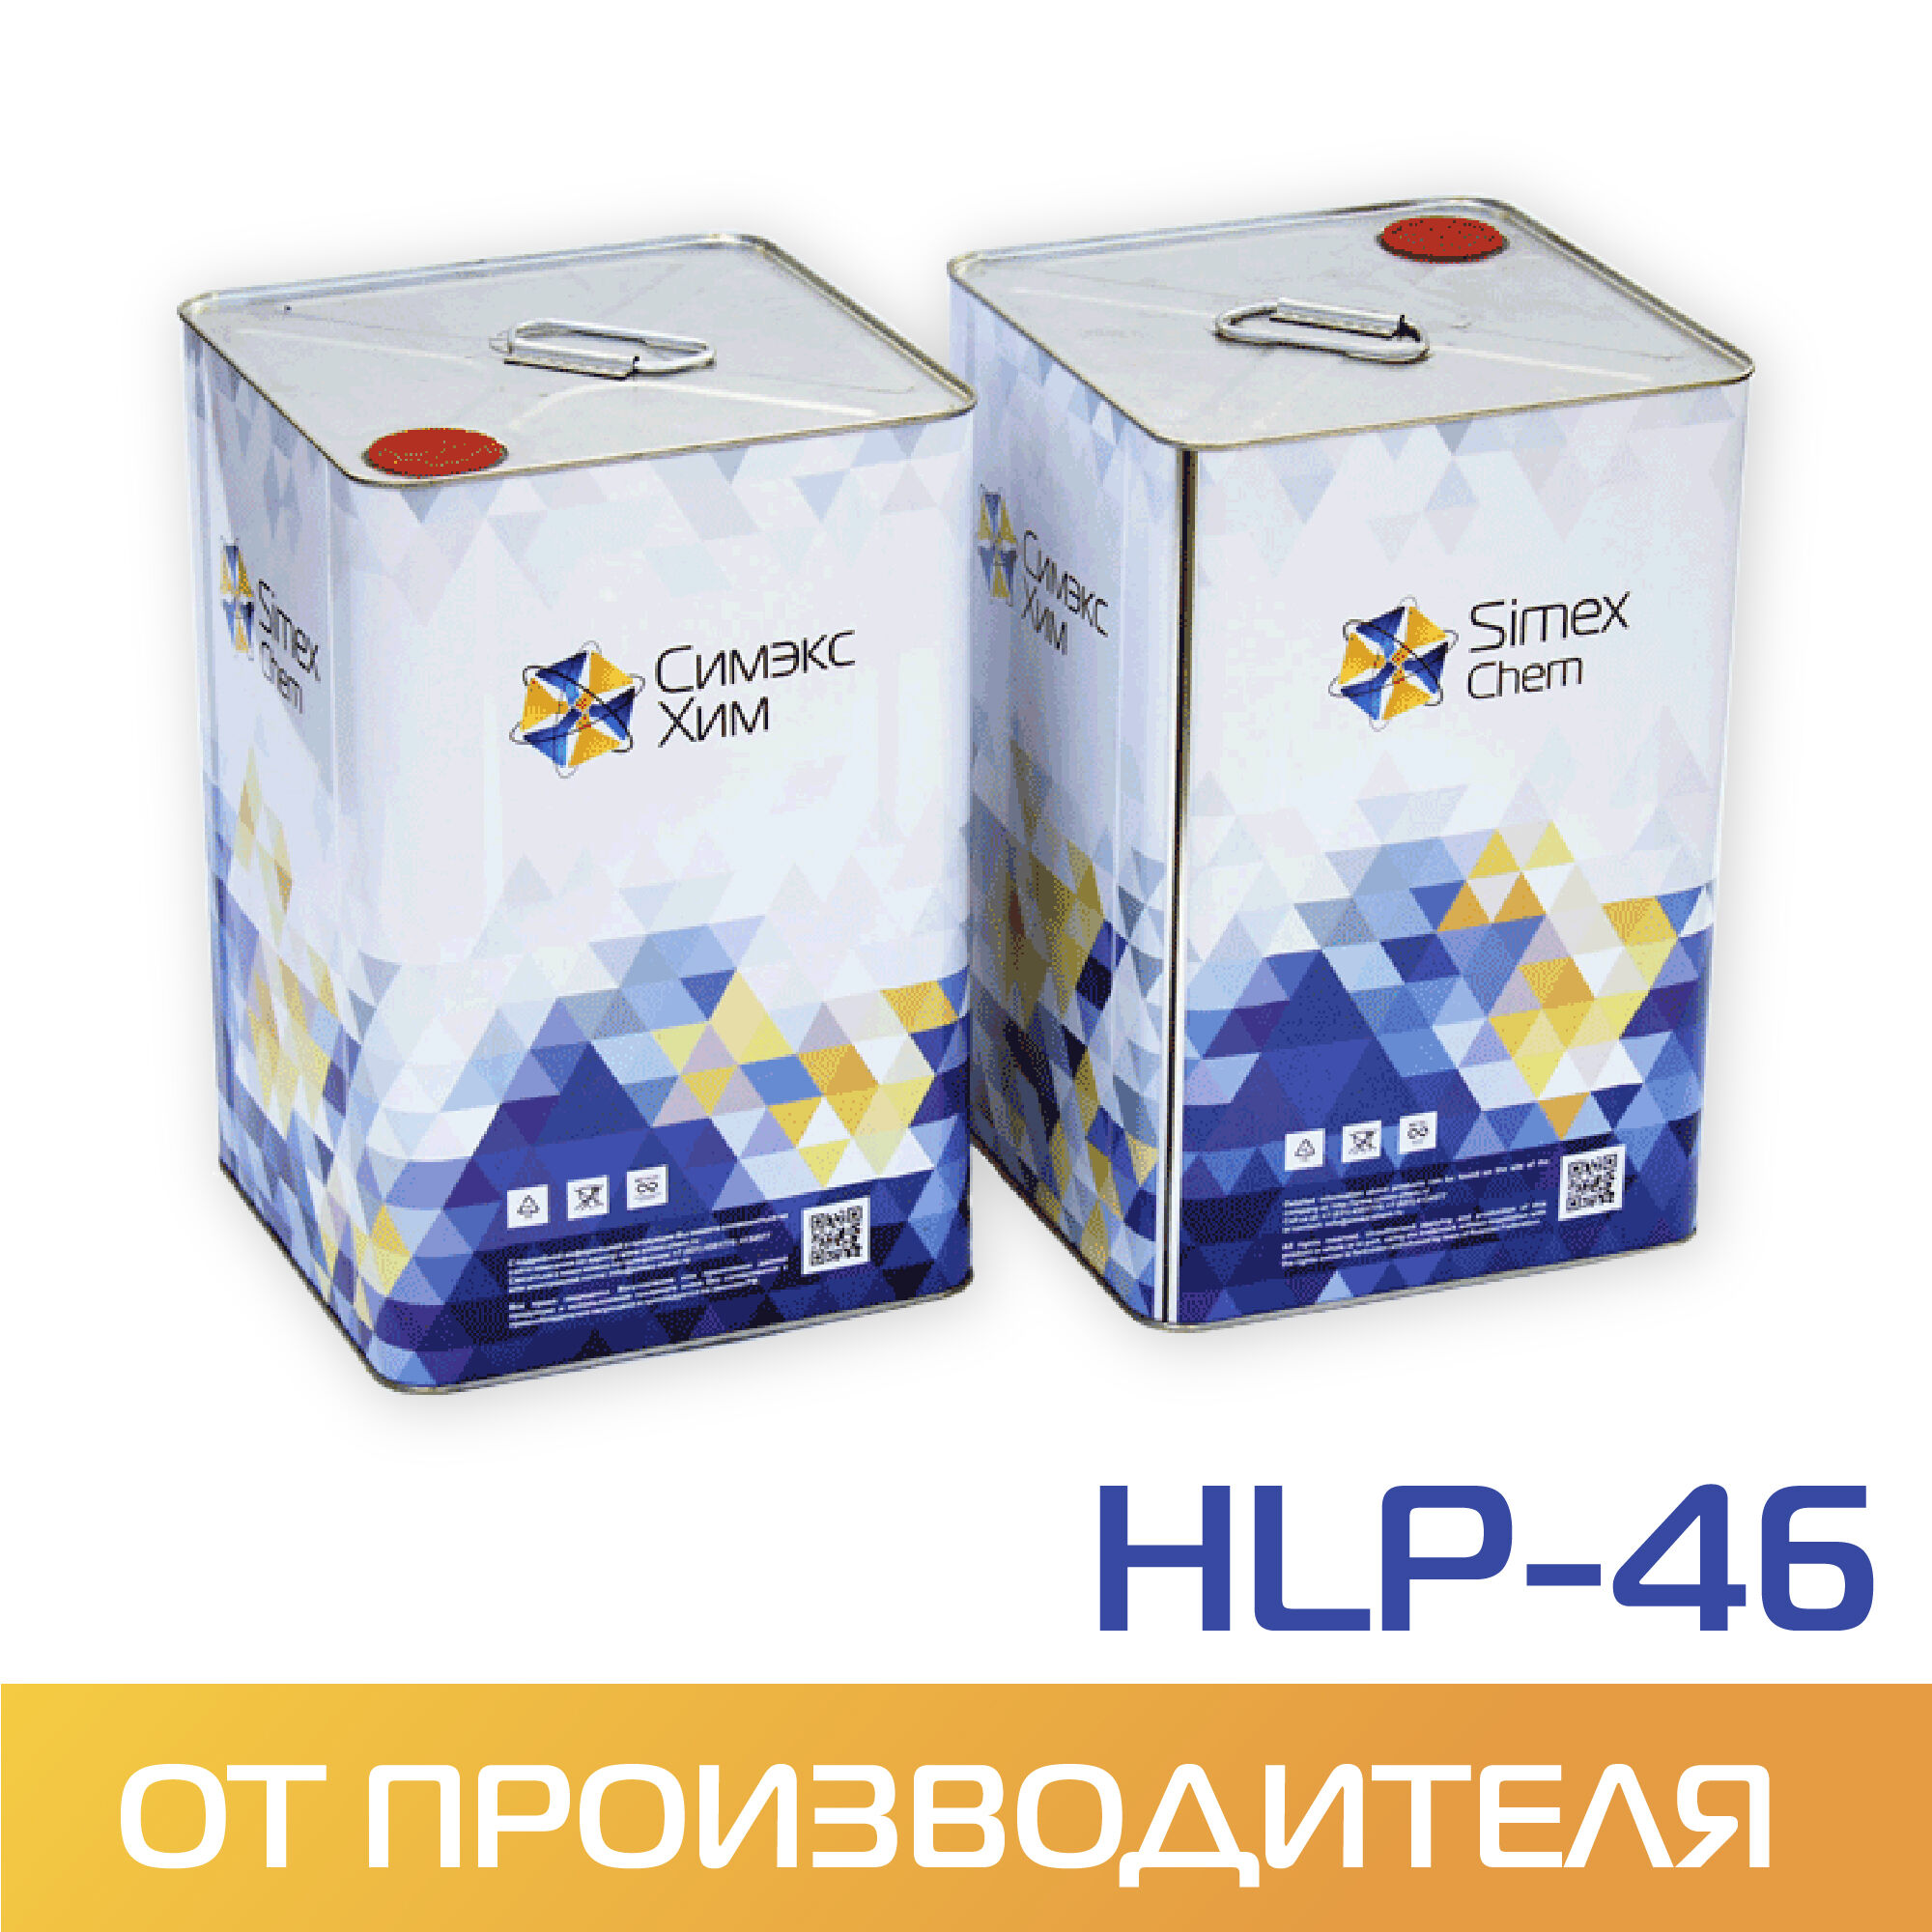 Масло гидравлическое HLP-46 бидон 15 кг